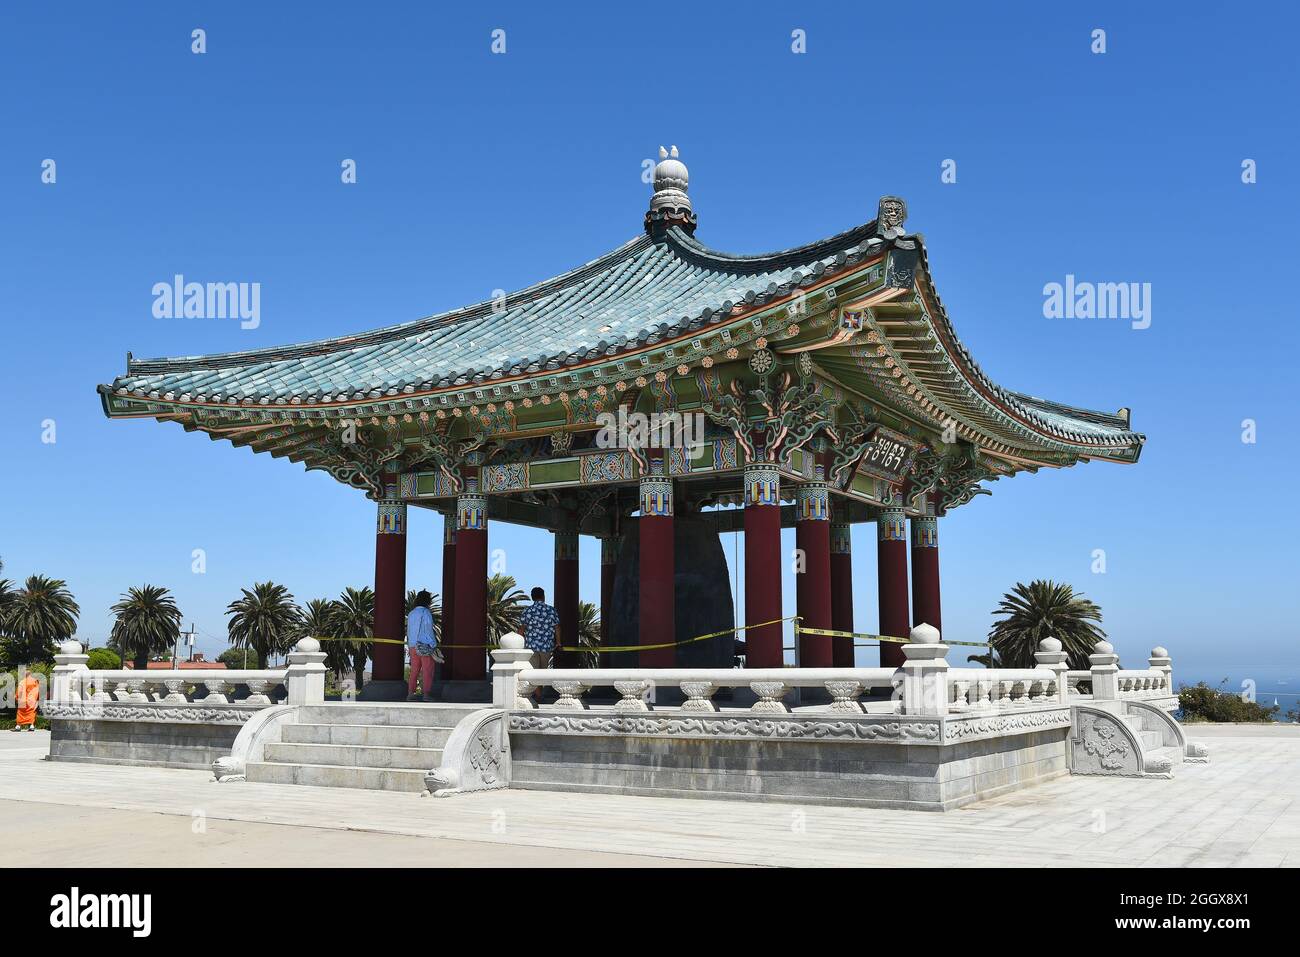 SAN PEDRO, KALIFORNIEN - 27. AUG 2021: Die koreanische Freundschaftsglocke im Angels Gate Park. Stockfoto